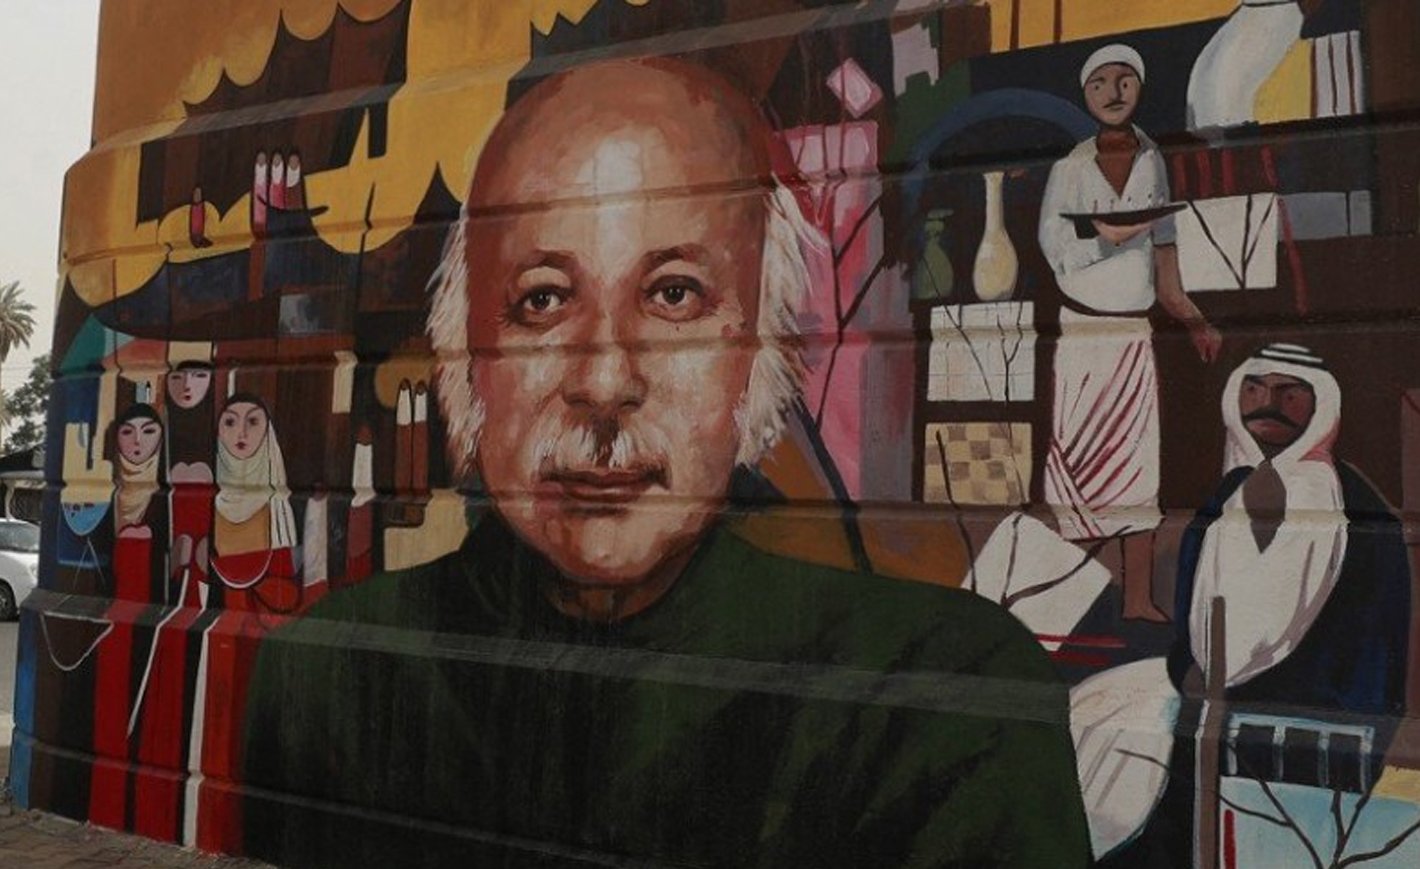  جدارية للشاعر العراقي مظفر النواب في العاصمة العراقية بغداد في 26 ابريل 2022 afp